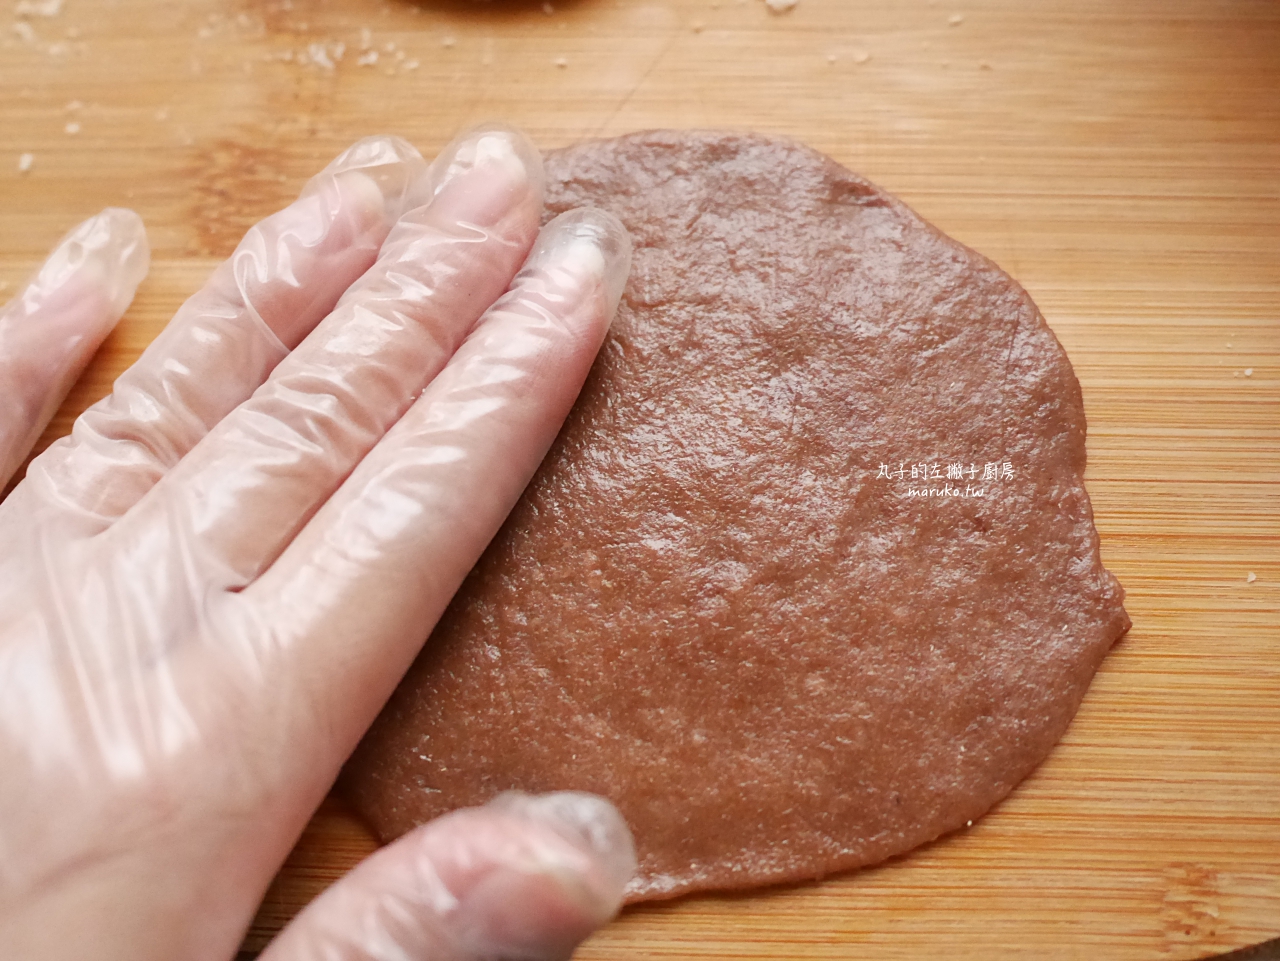 【食譜】焦糖夾心餅乾 烤餅乾只要3分鐘 小V鬆餅機 蕾絲烤盤分享 @Maruko與美食有個約會